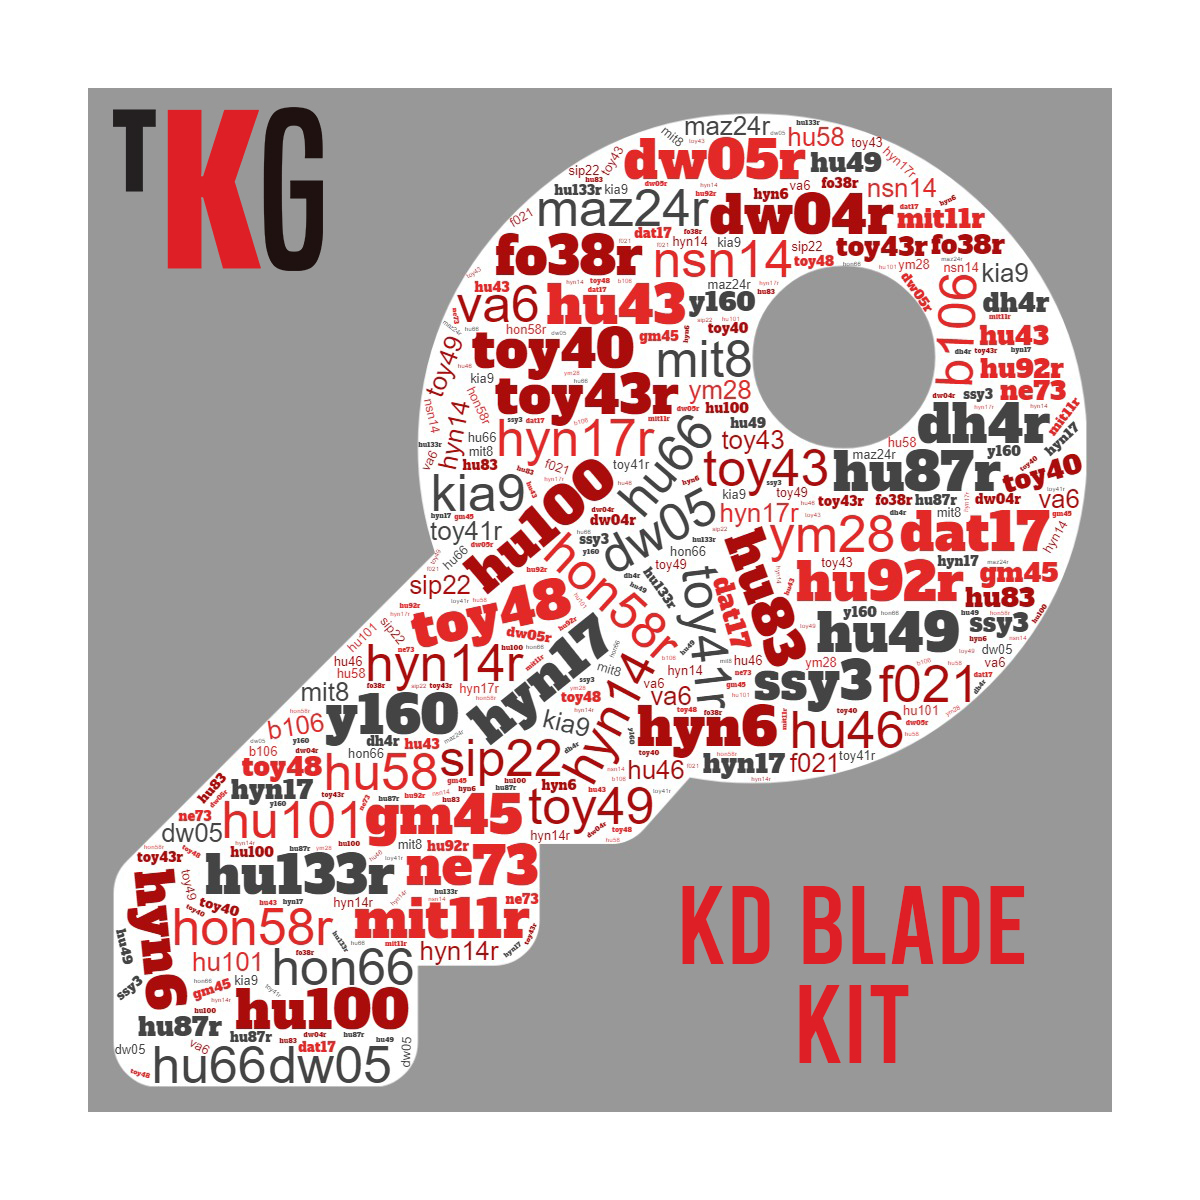 Blade kit